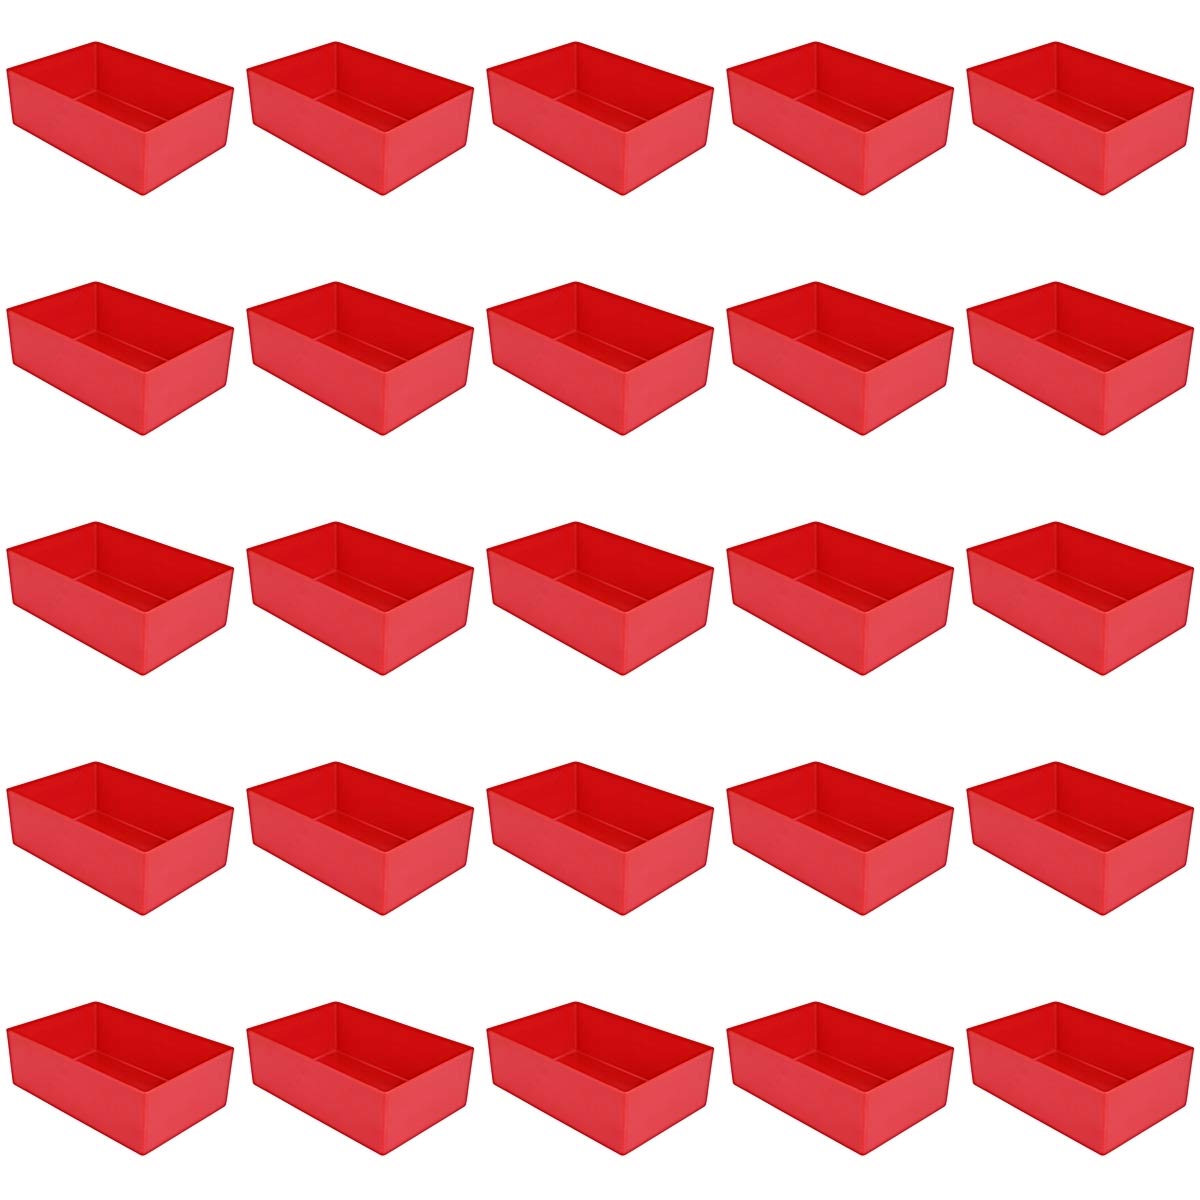 25 Stück Einsatzkasten rot, Höhe 54 mm, LxB = 160x106 mm, Profiqualität für Industrie und Gewerbe